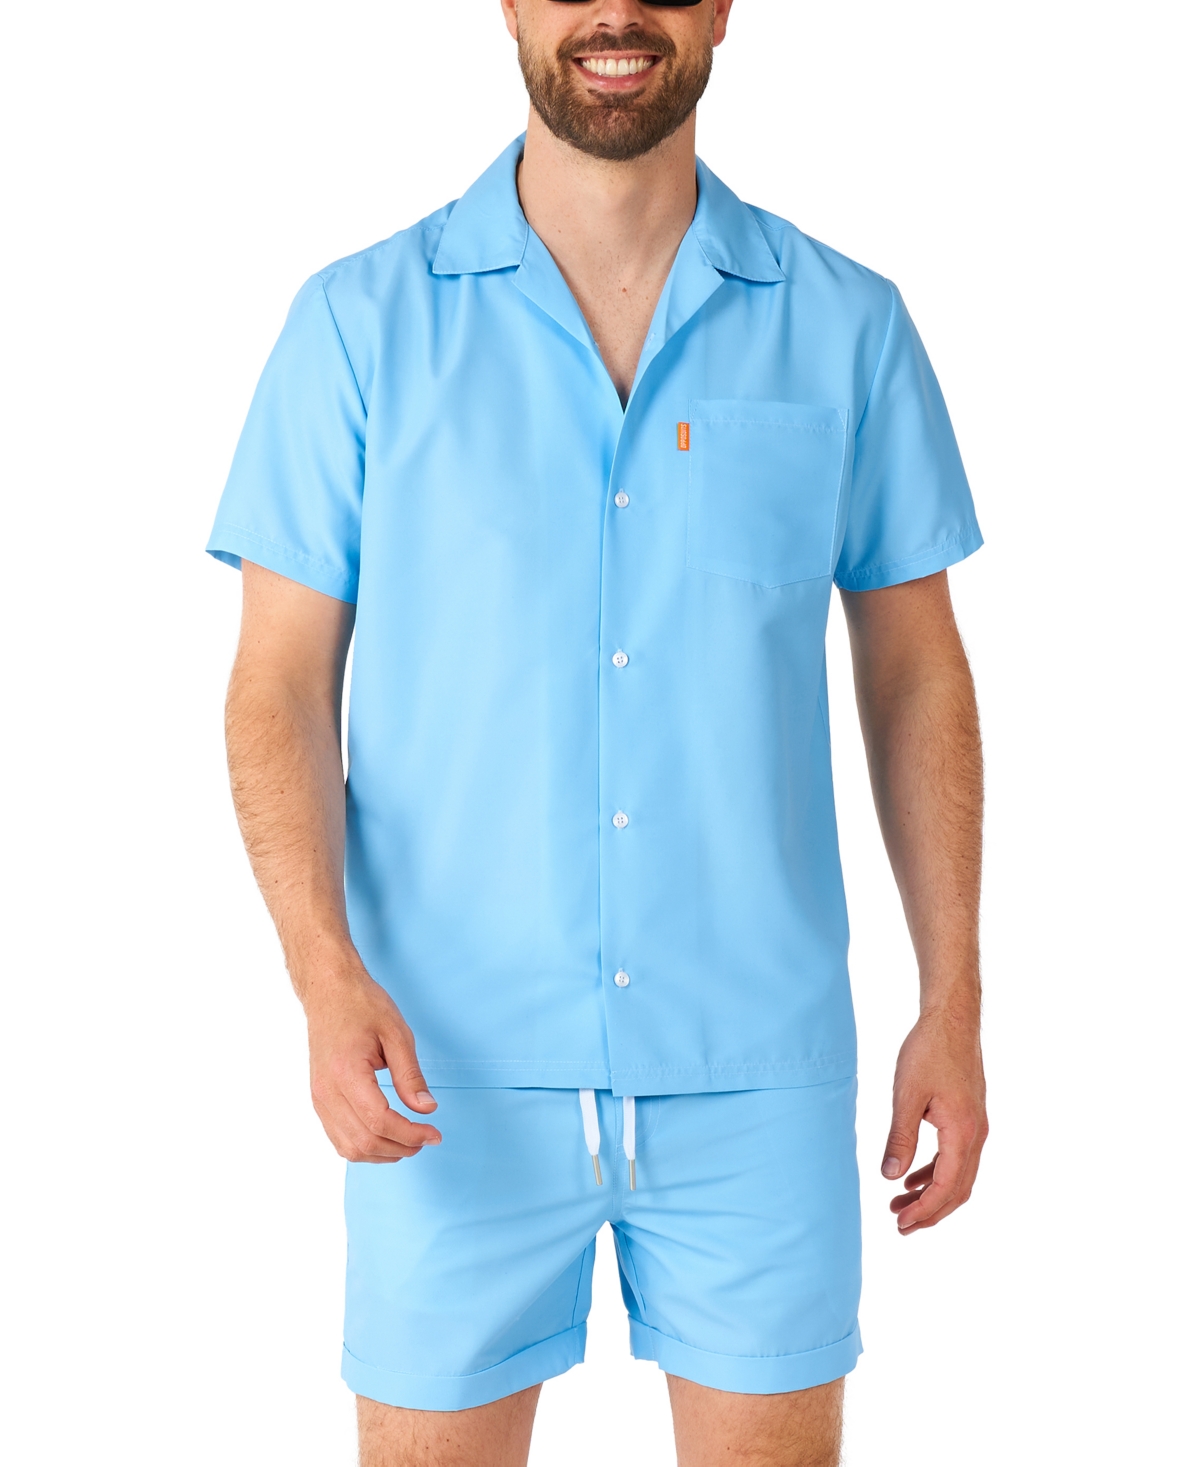 Men's Short-Sleeve Cool Blue Shirt & Shorts Set - Blue